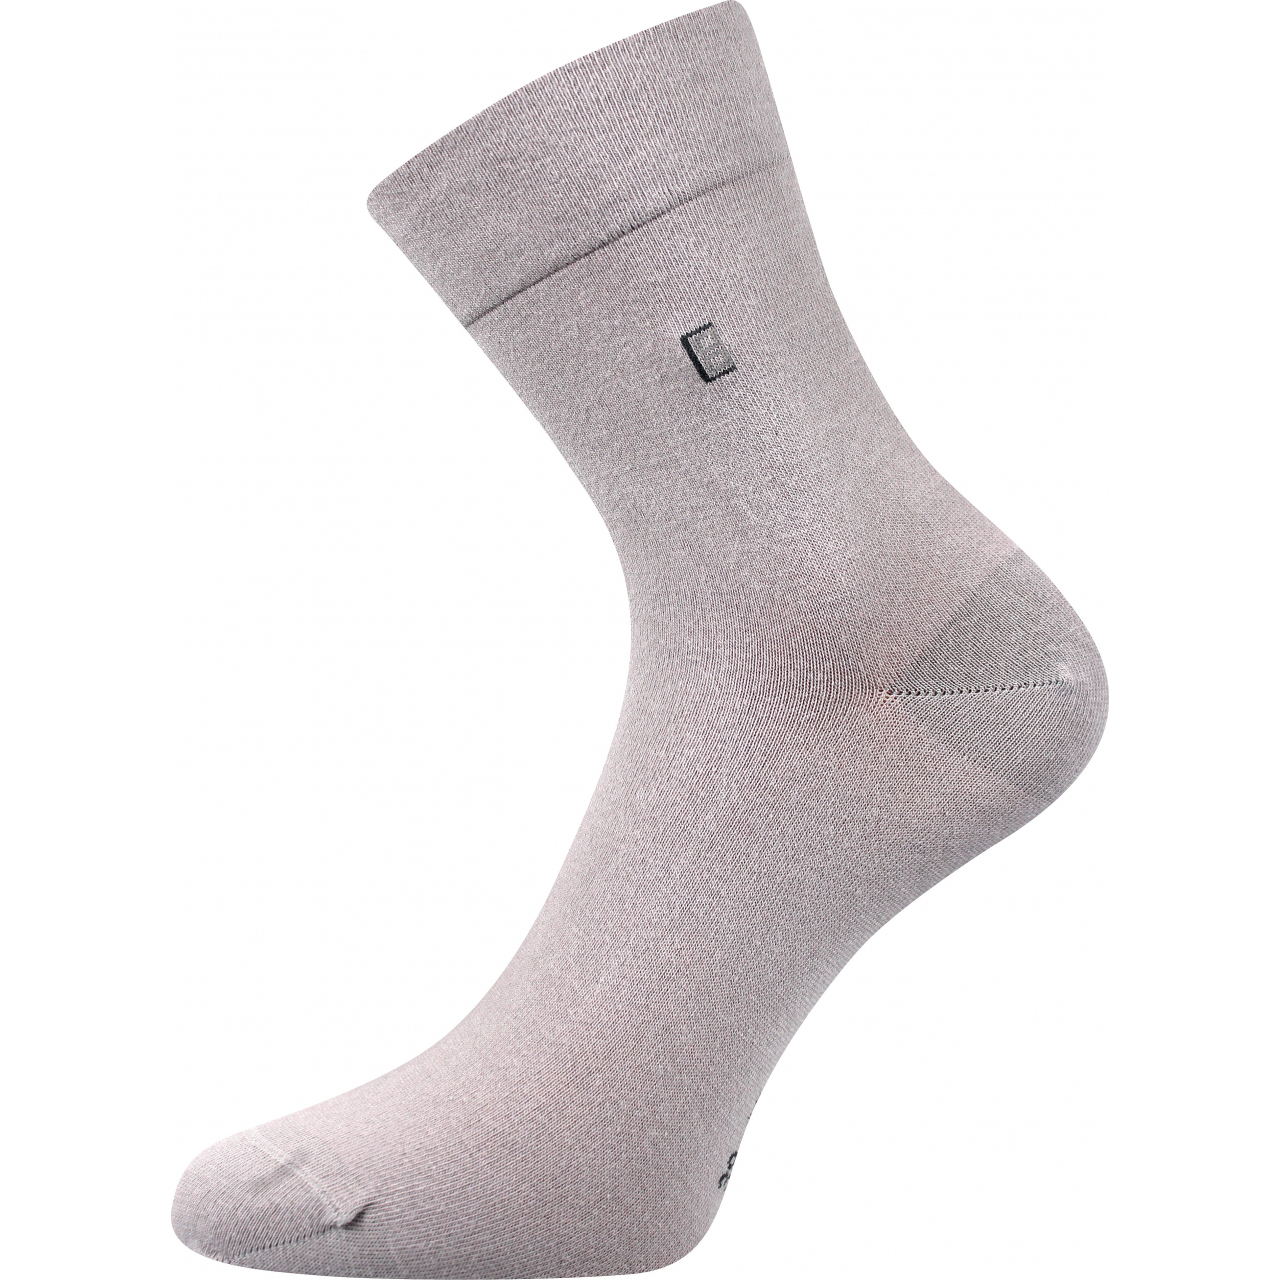 Ponožky pánské společenské Lonka Dagles - světle šedé, 39-42